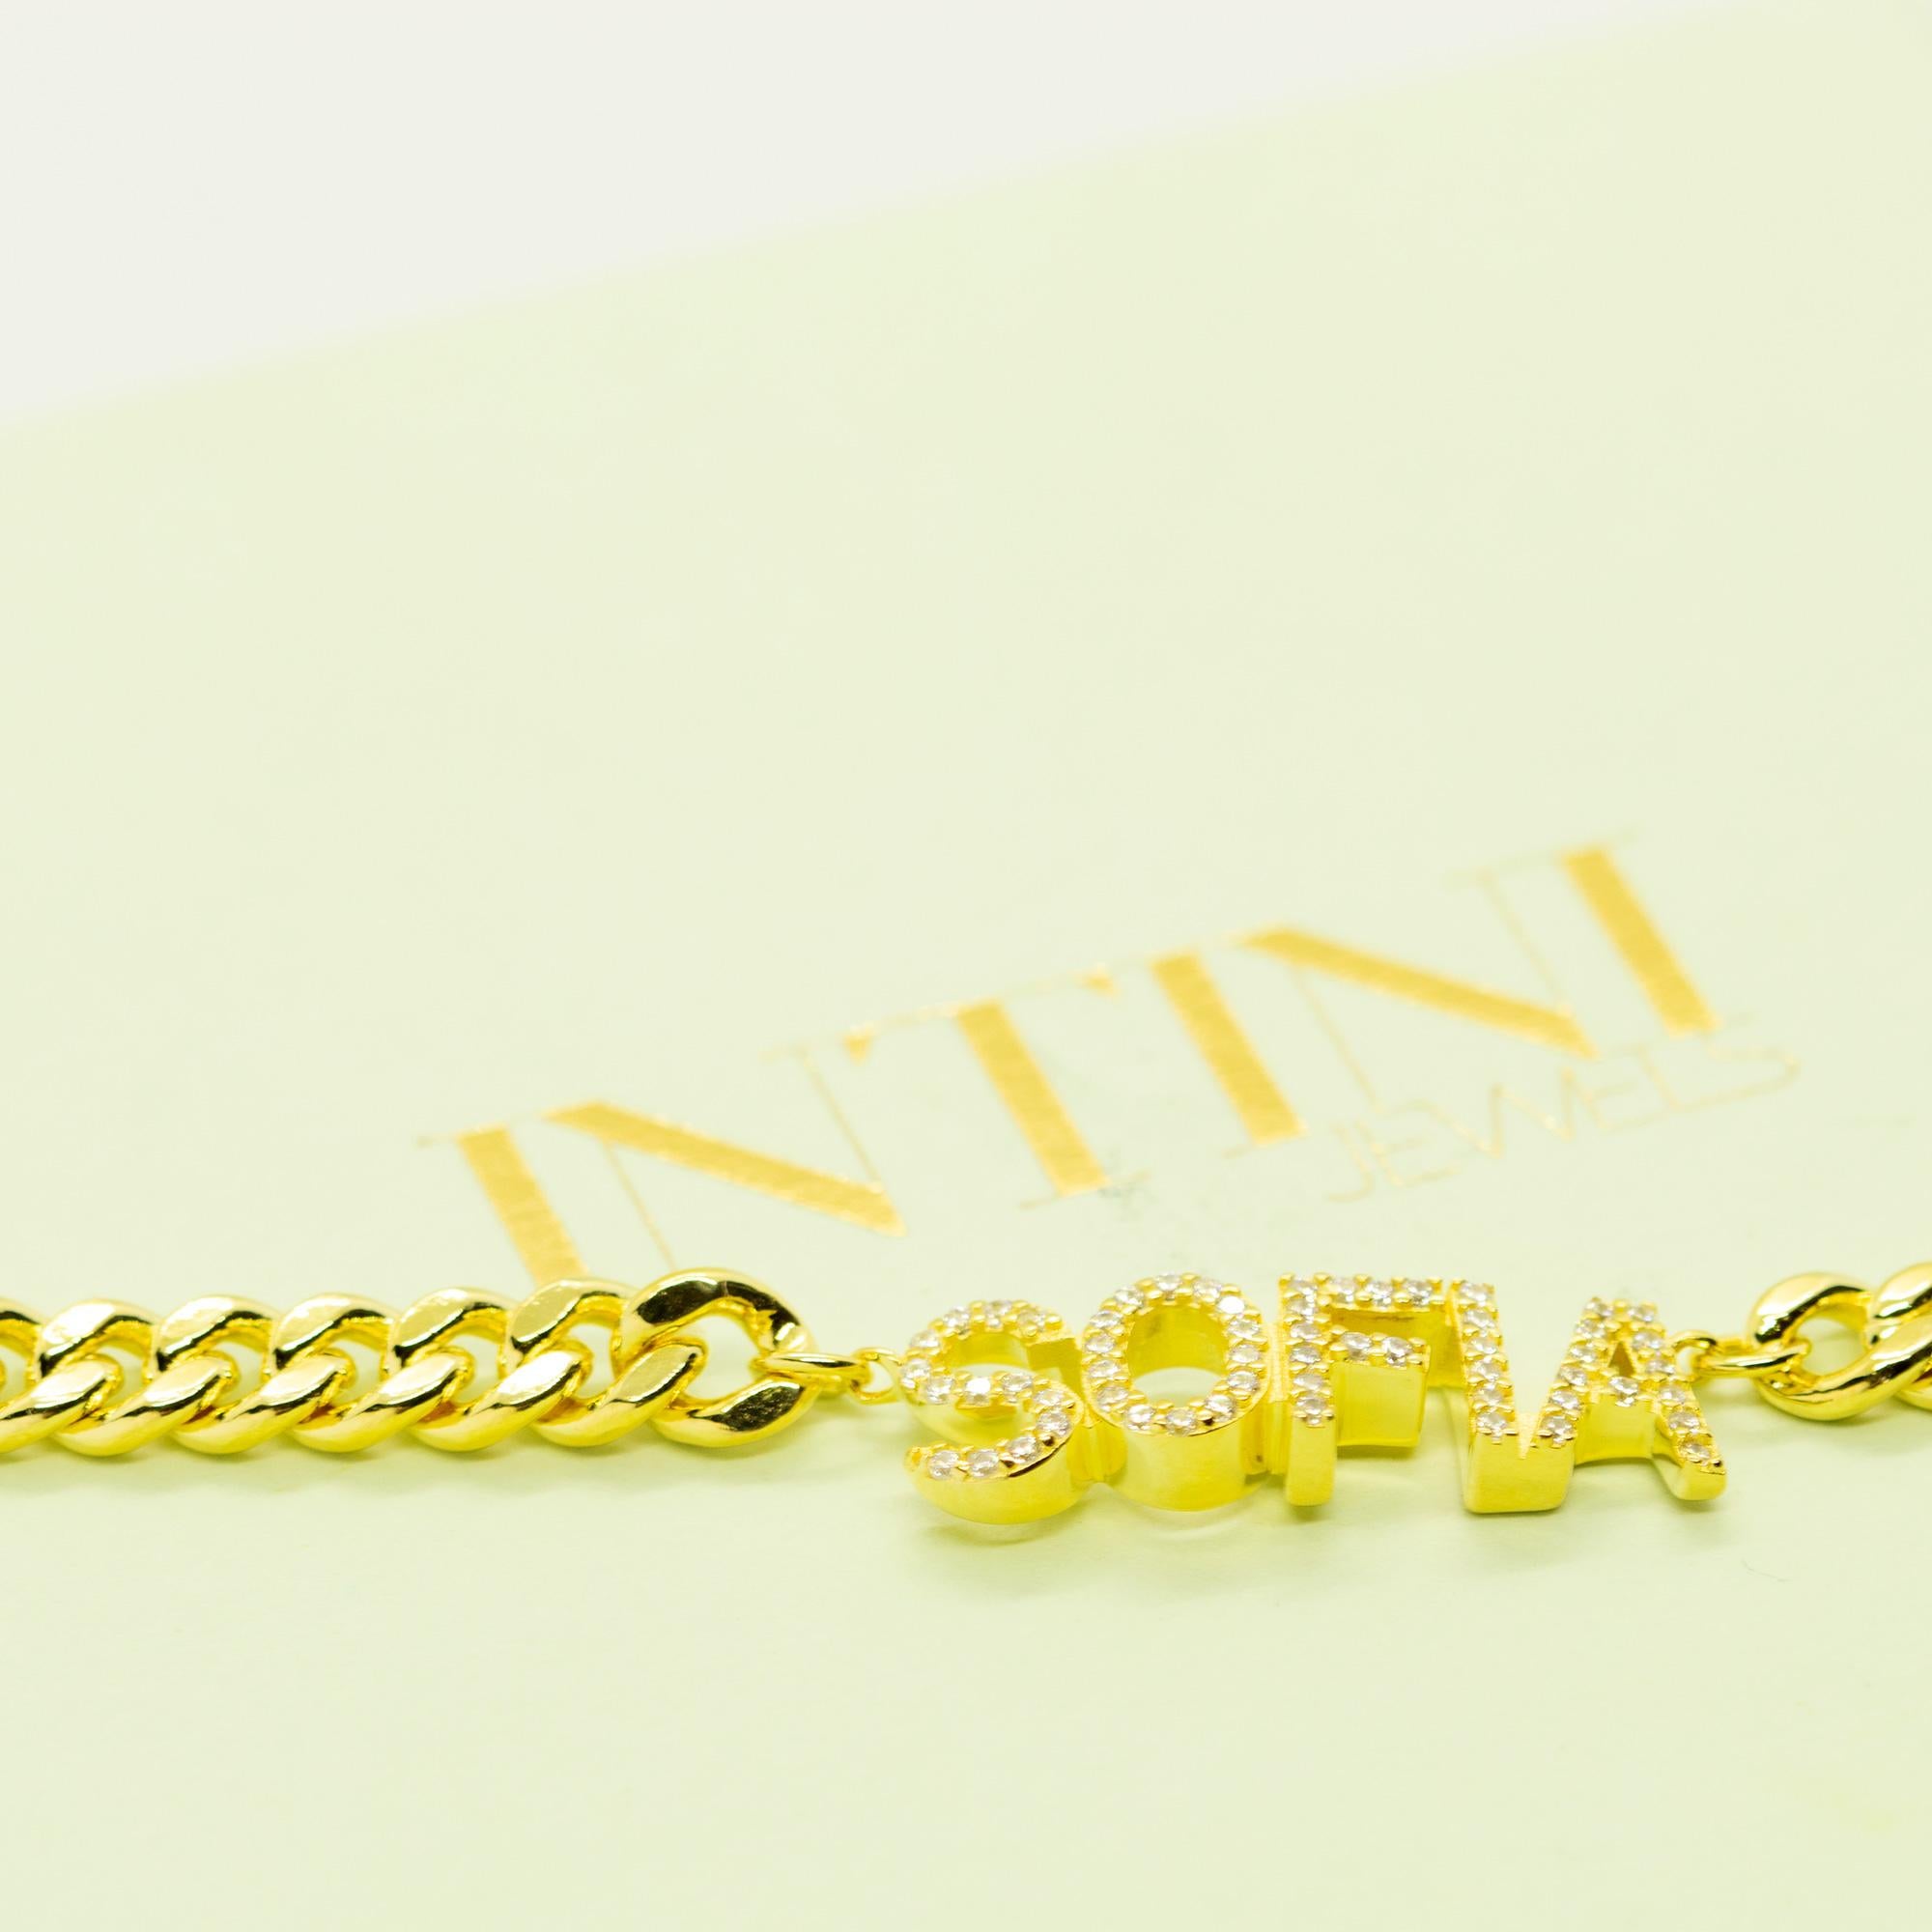 sofia name necklace